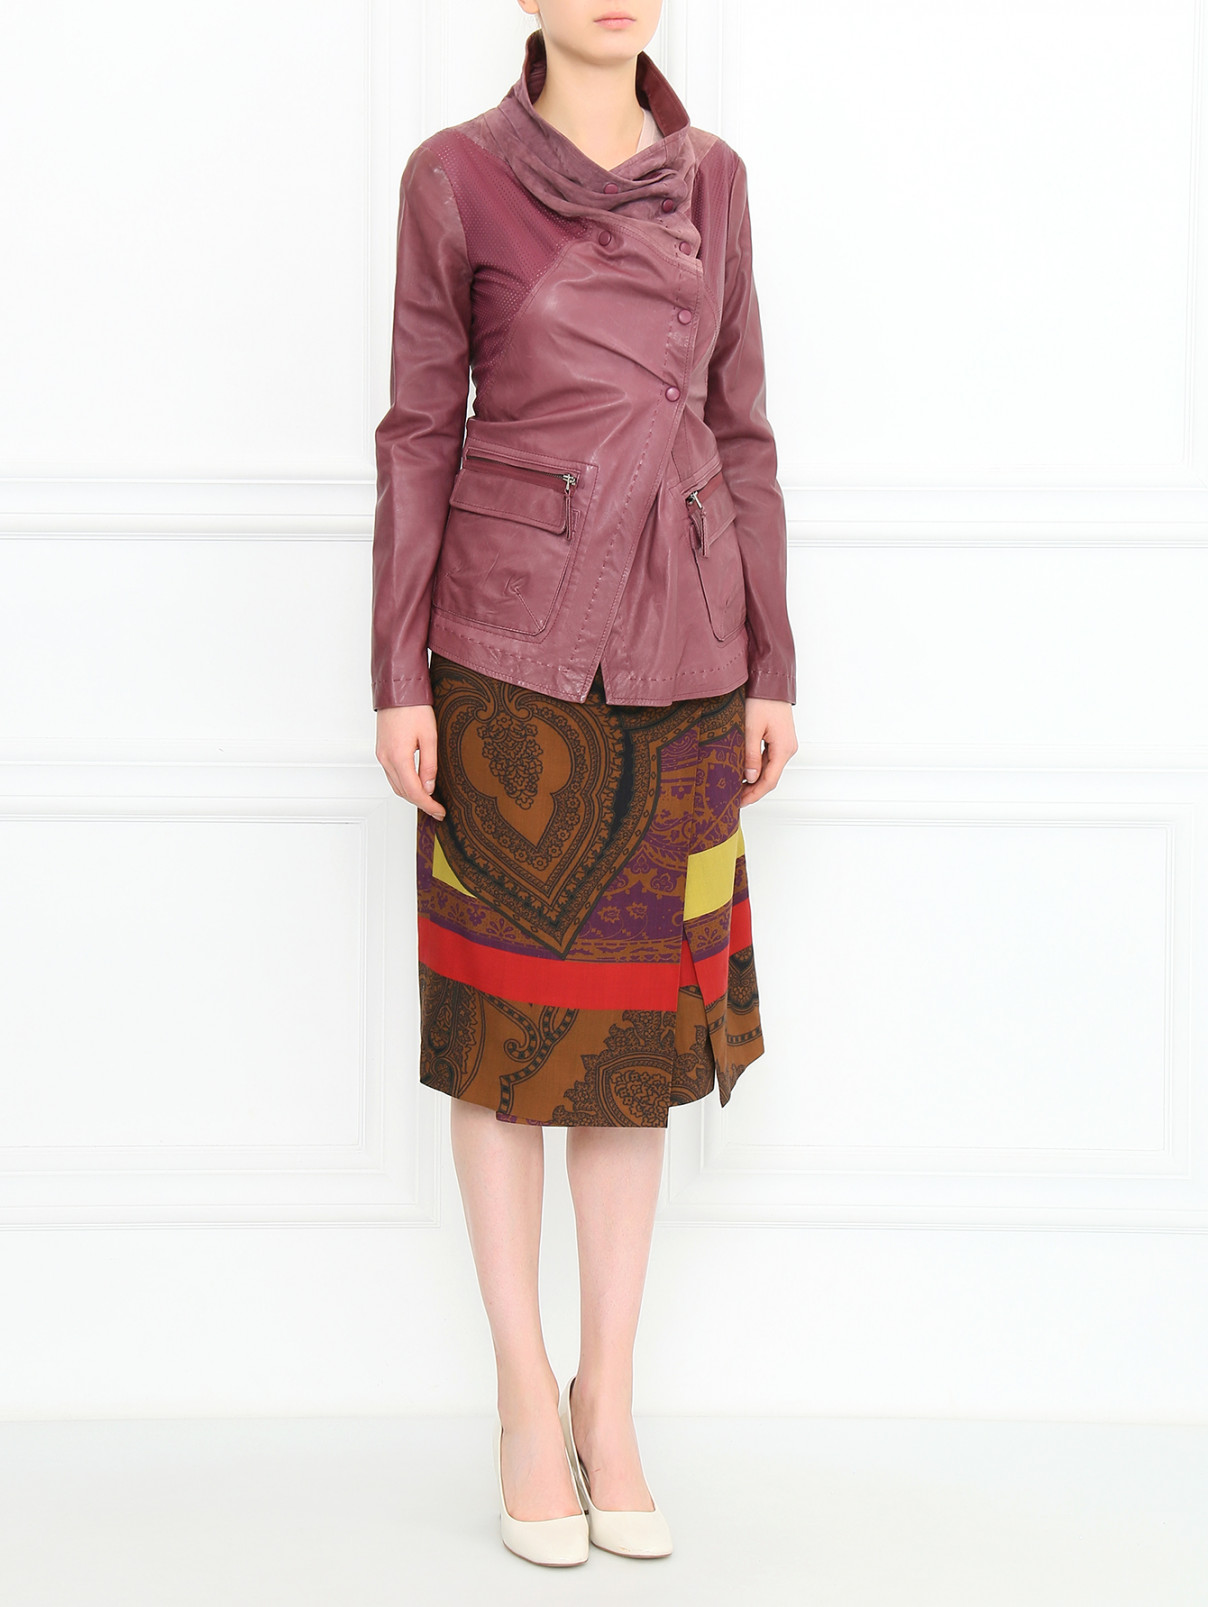 Куртка из кожи Isola Marras  –  Модель Общий вид  – Цвет:  Фиолетовый